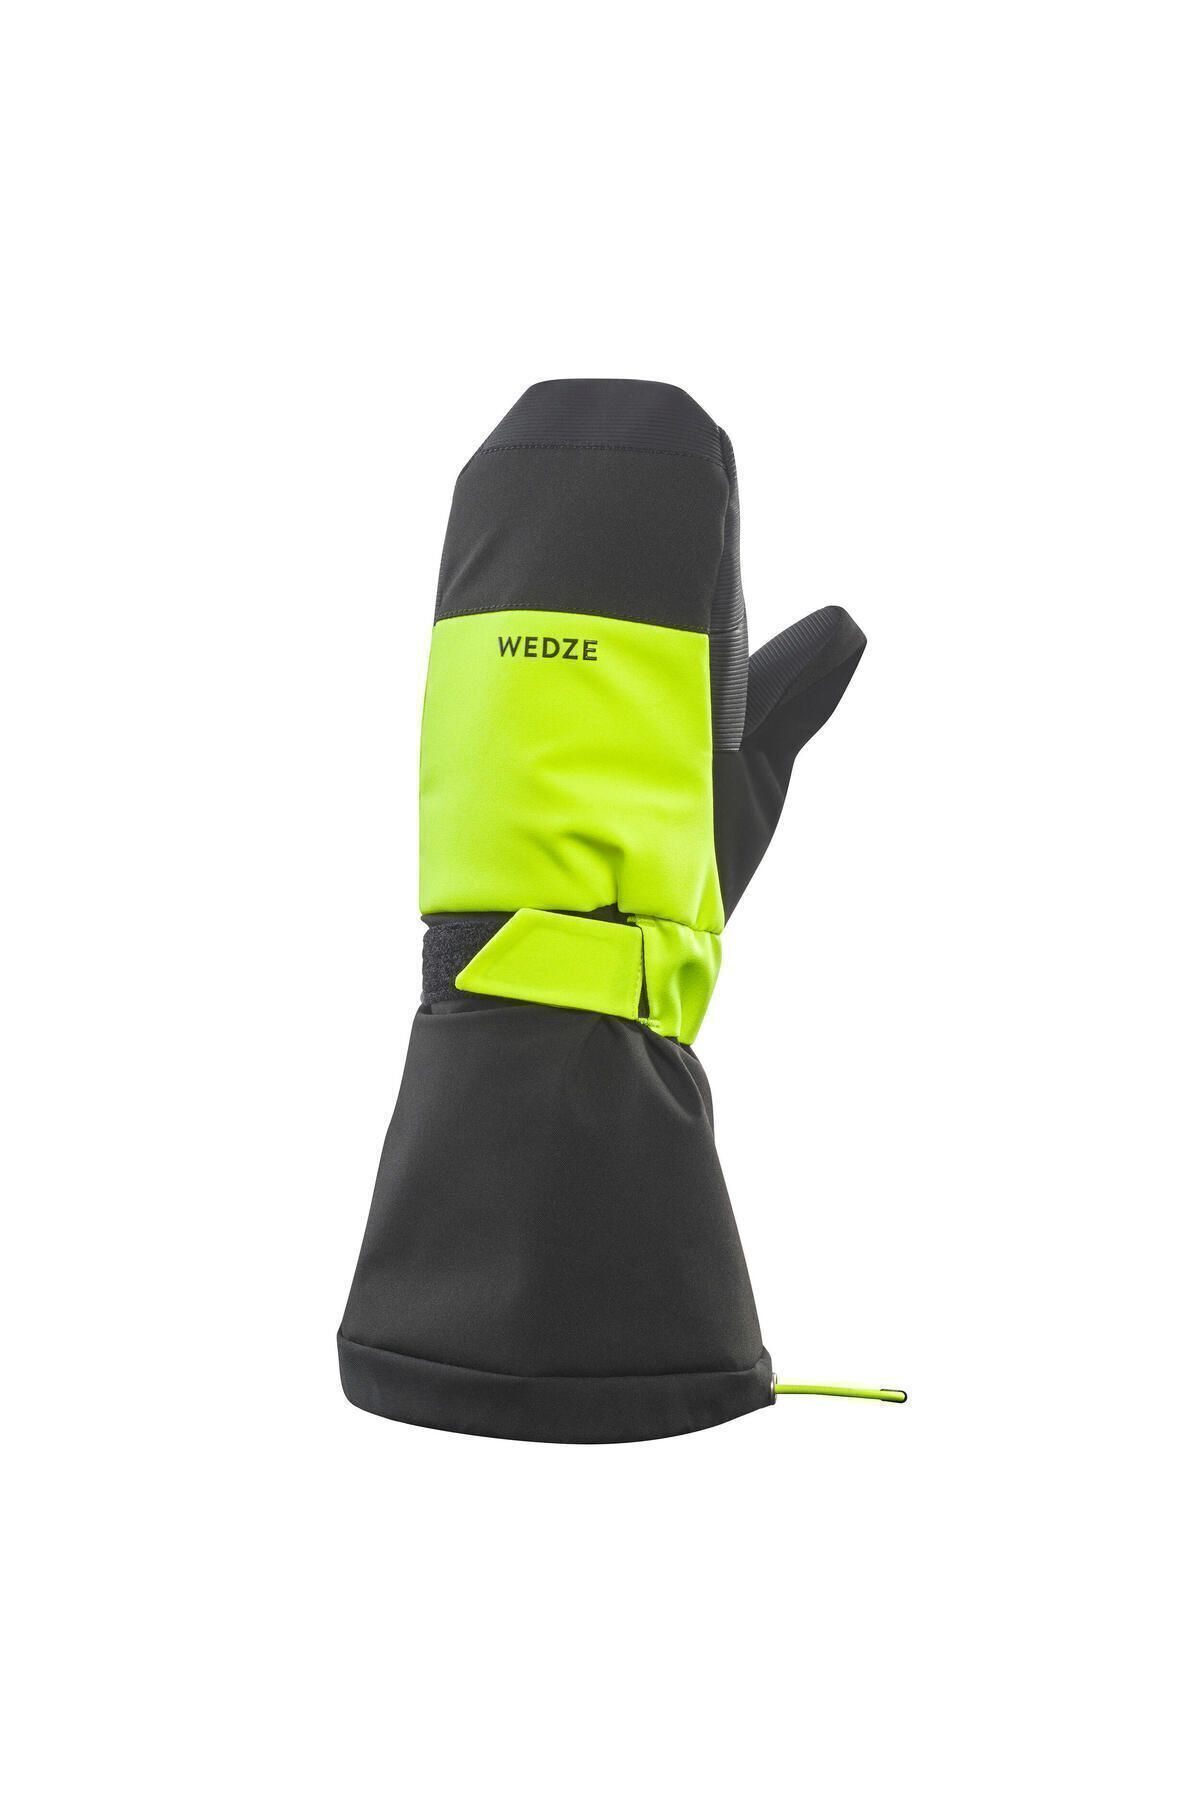 Decathlon Çocuk Tek Parmaklı Kayak Eldiveni - Siyah / Neon Sarı - 550